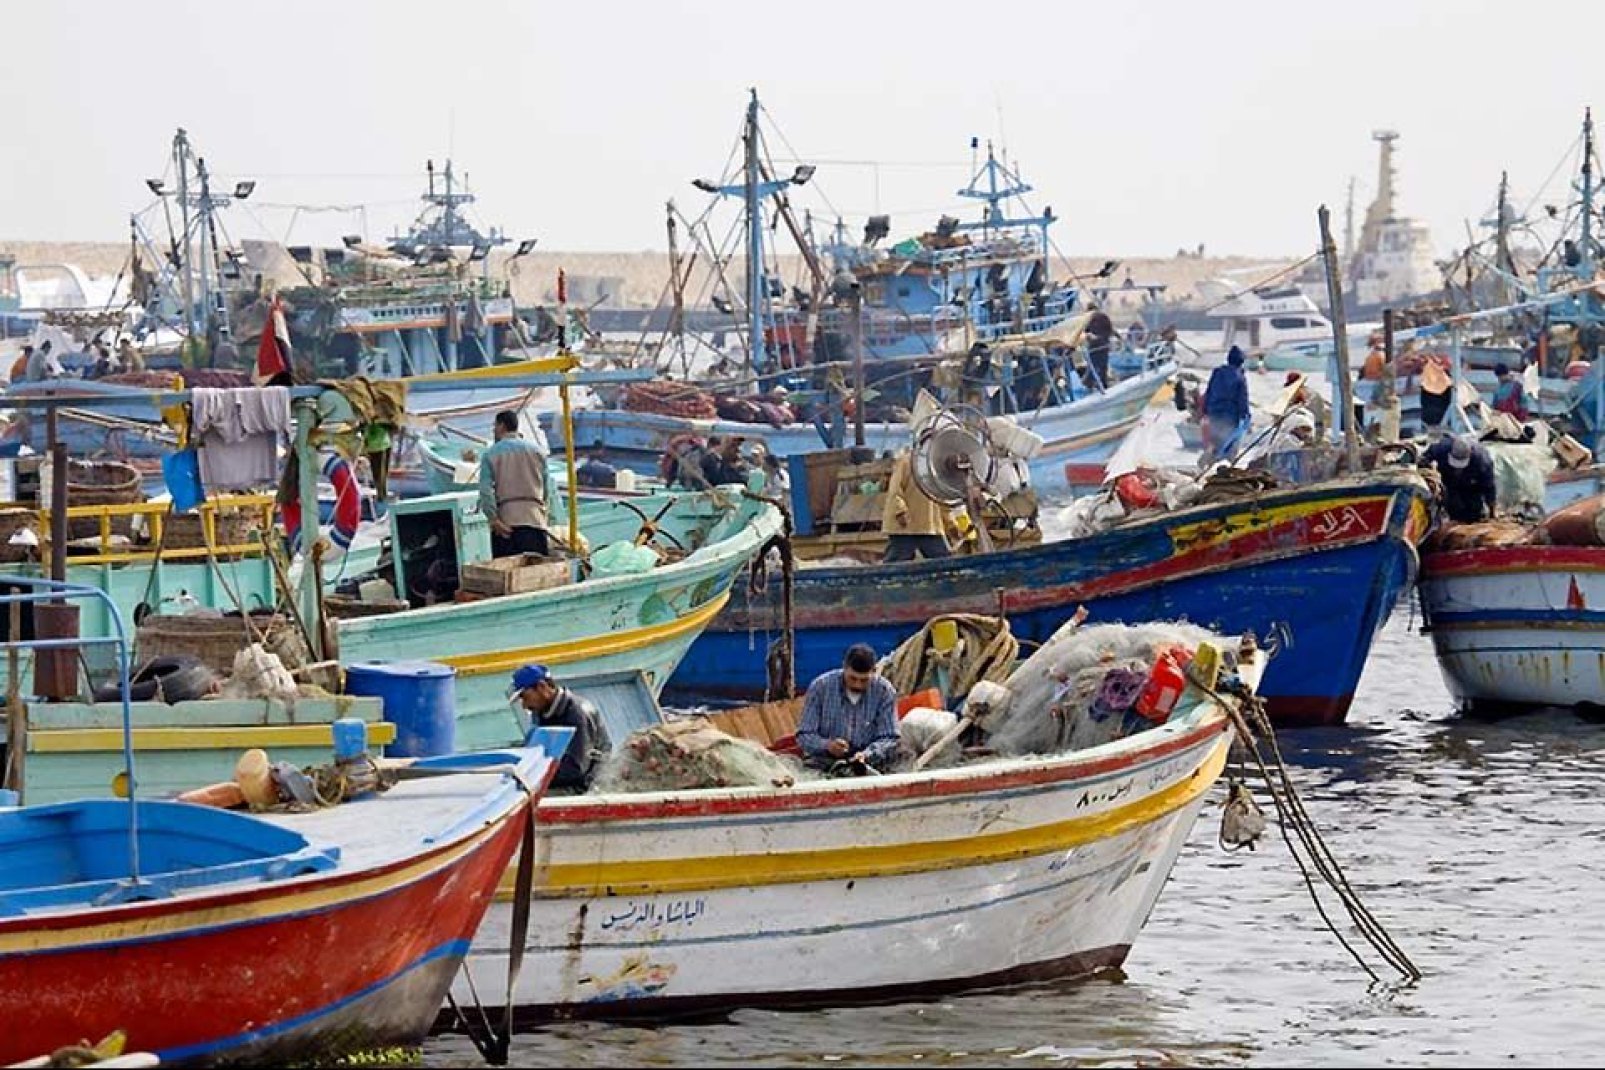 L'animation qui s'empare du marché aux poissons chaque matin, fait encore bien partie de la vie d'Alexandrie.